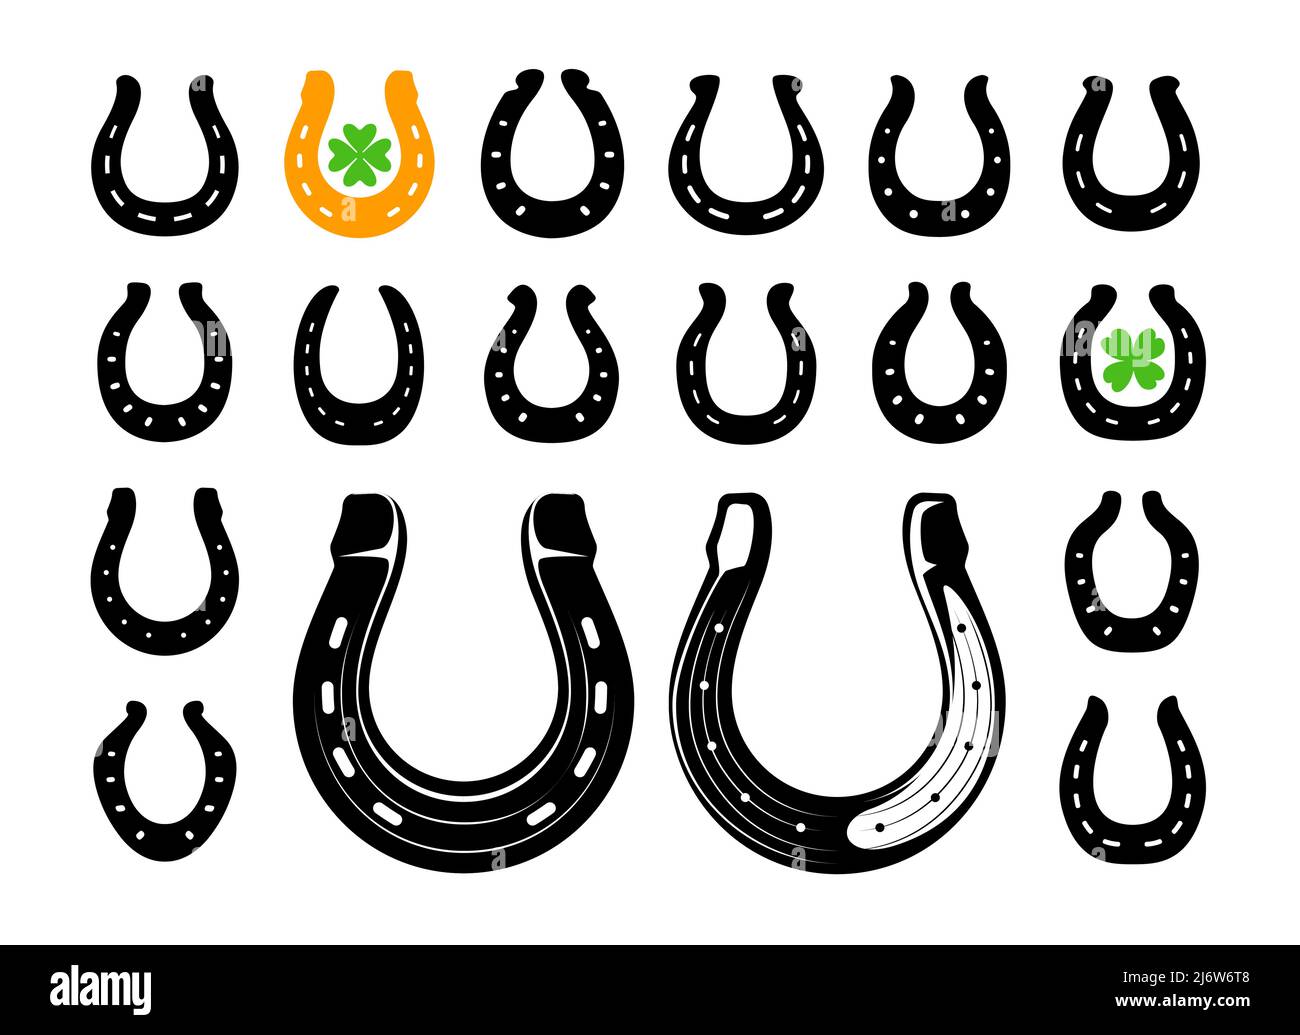 Horseshoe Icon Set-Vektor. Viel Glück, Patricks Day Symbol isoliert auf weißem Hintergrund Stock Vektor